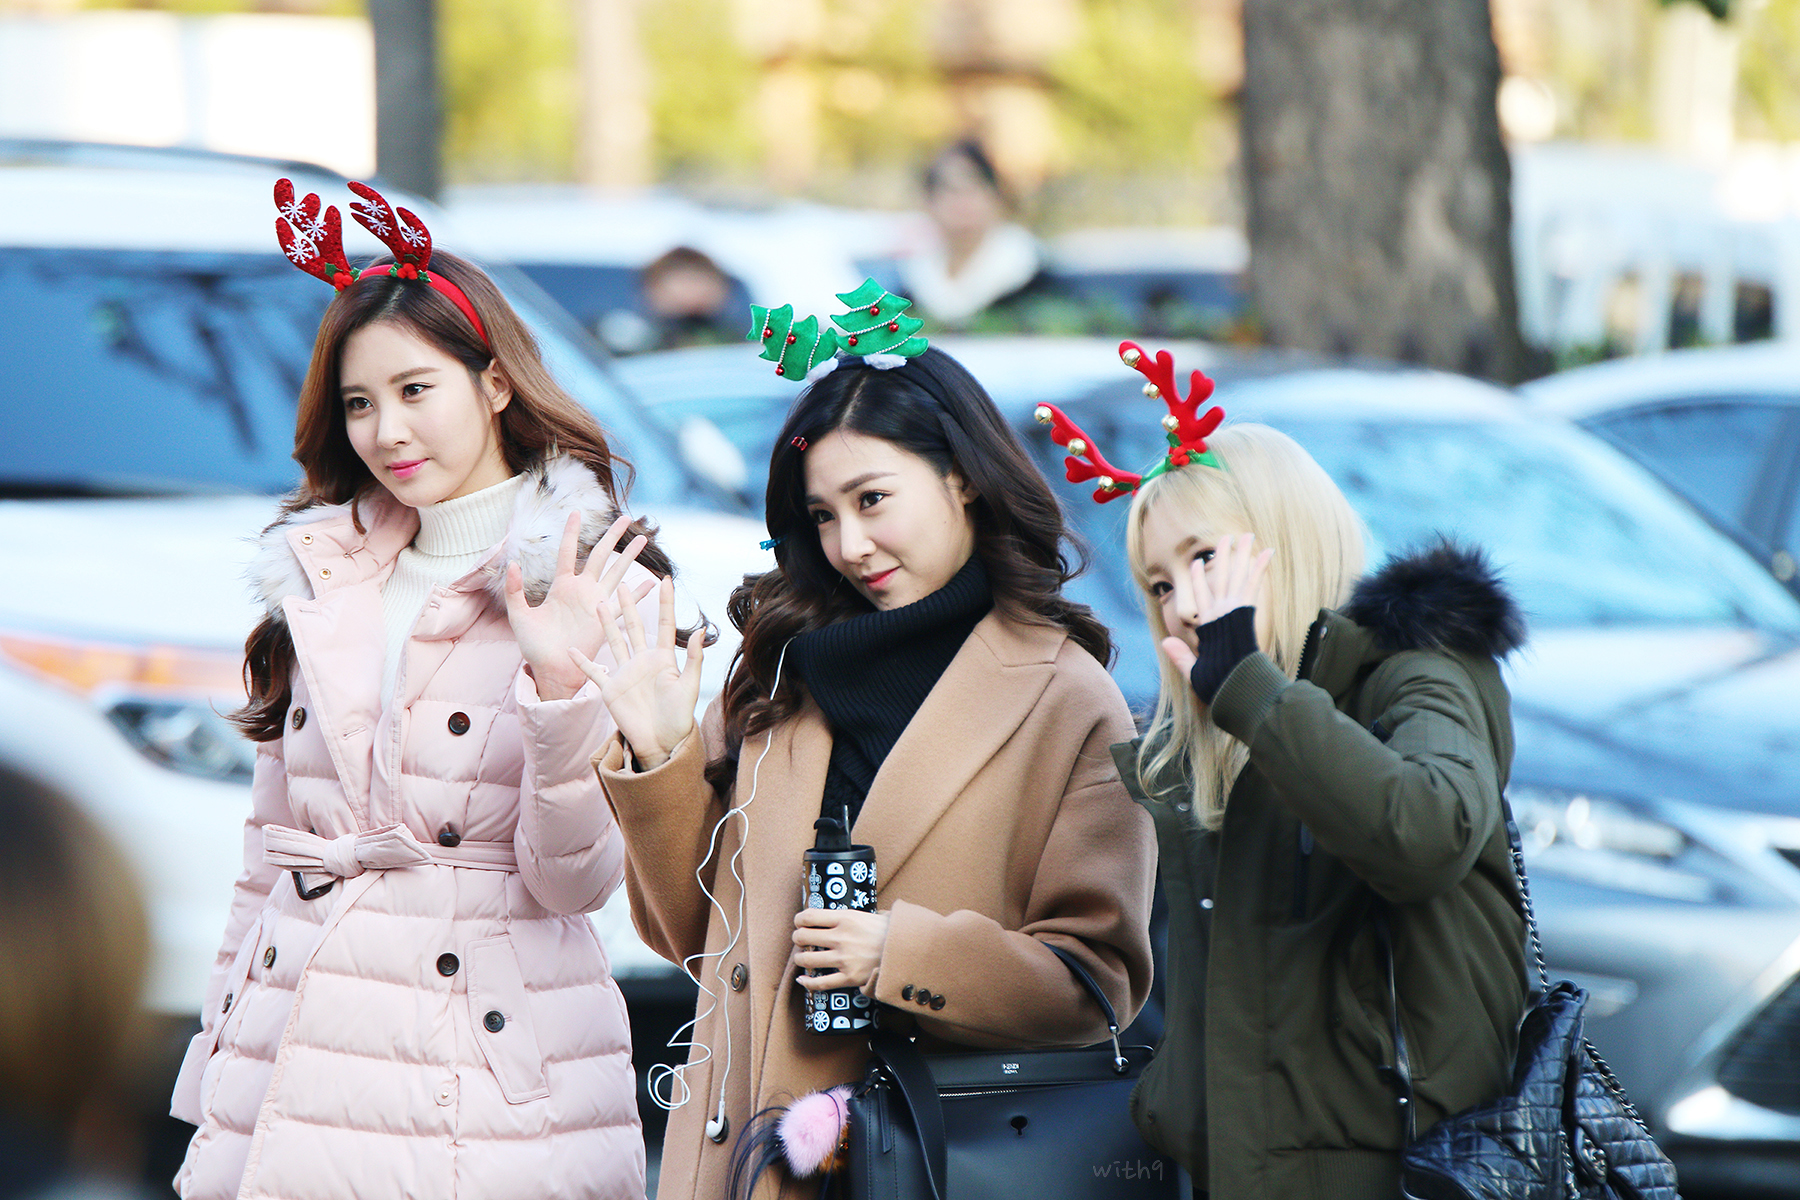 [PIC][04-12-2015]Hình ảnh mới nhất từ chuỗi quảng bá cho Mini Album "Dear Santa" của TaeTiSeo - Page 2 22633D3356658E58244E37